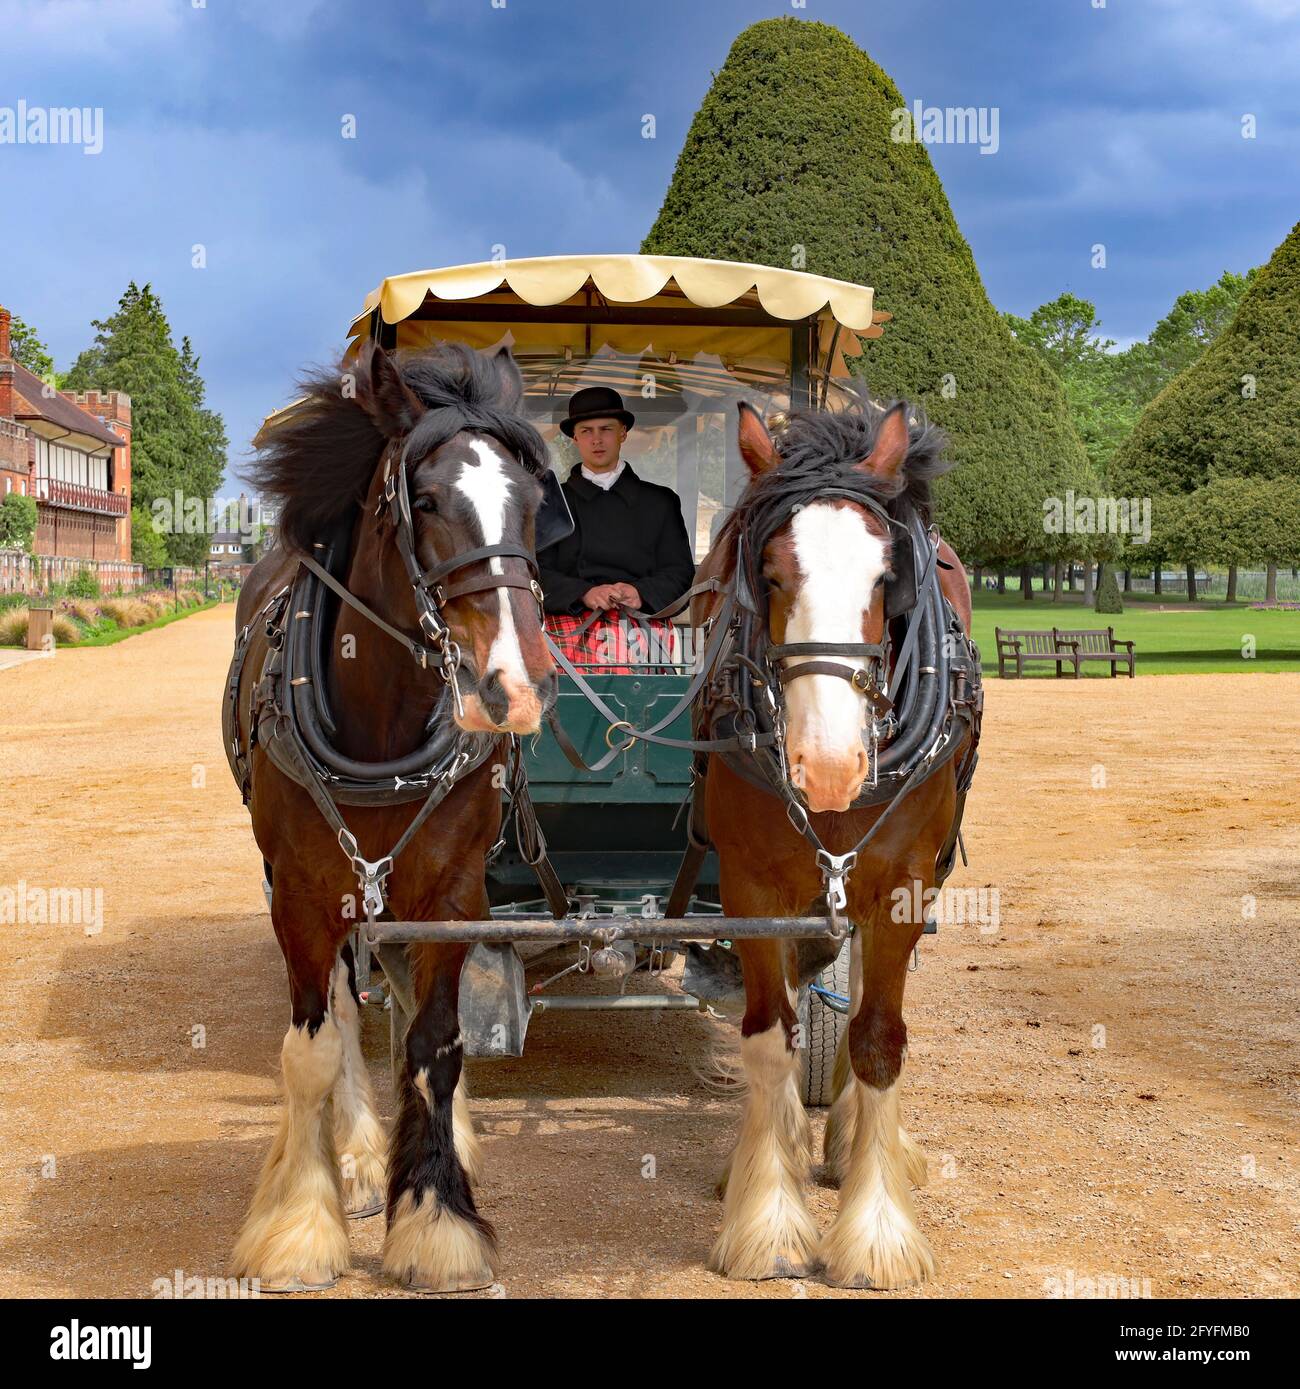 Des chevaux ont tiré en calèche avec un chauffeur en robe traditionnelle attendant les passagers dans les jardins East Front, Hampton court Palace, Londres, Angleterre, Royaume-Uni Banque D'Images